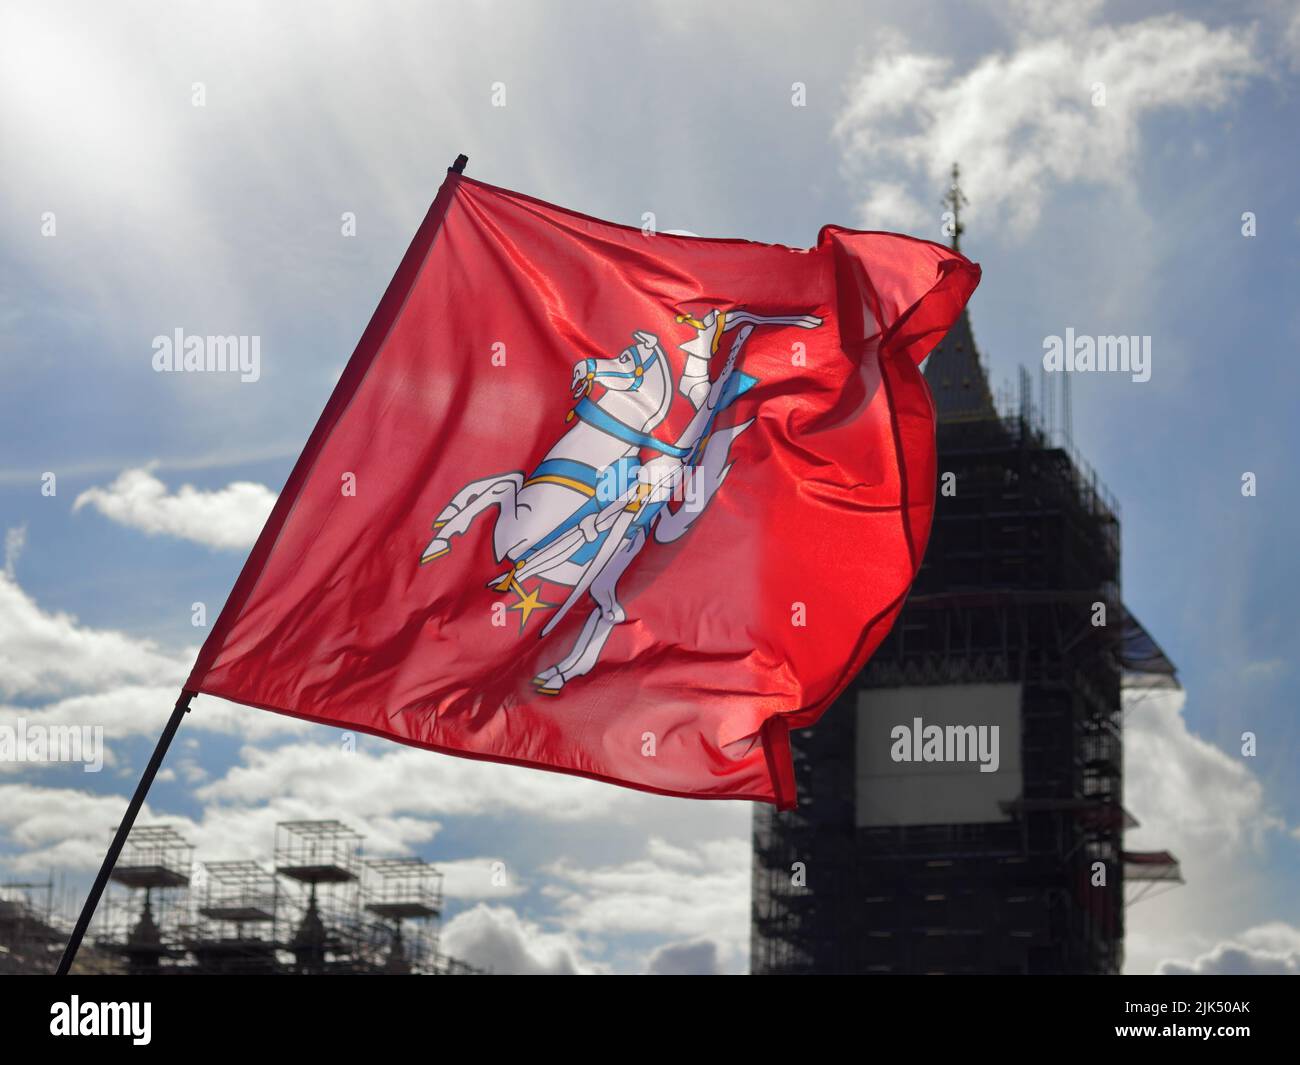 Londres, Royaume-Uni - 23 août 2020: Drapeau national lituanien avec Big Ben en arrière-plan Banque D'Images